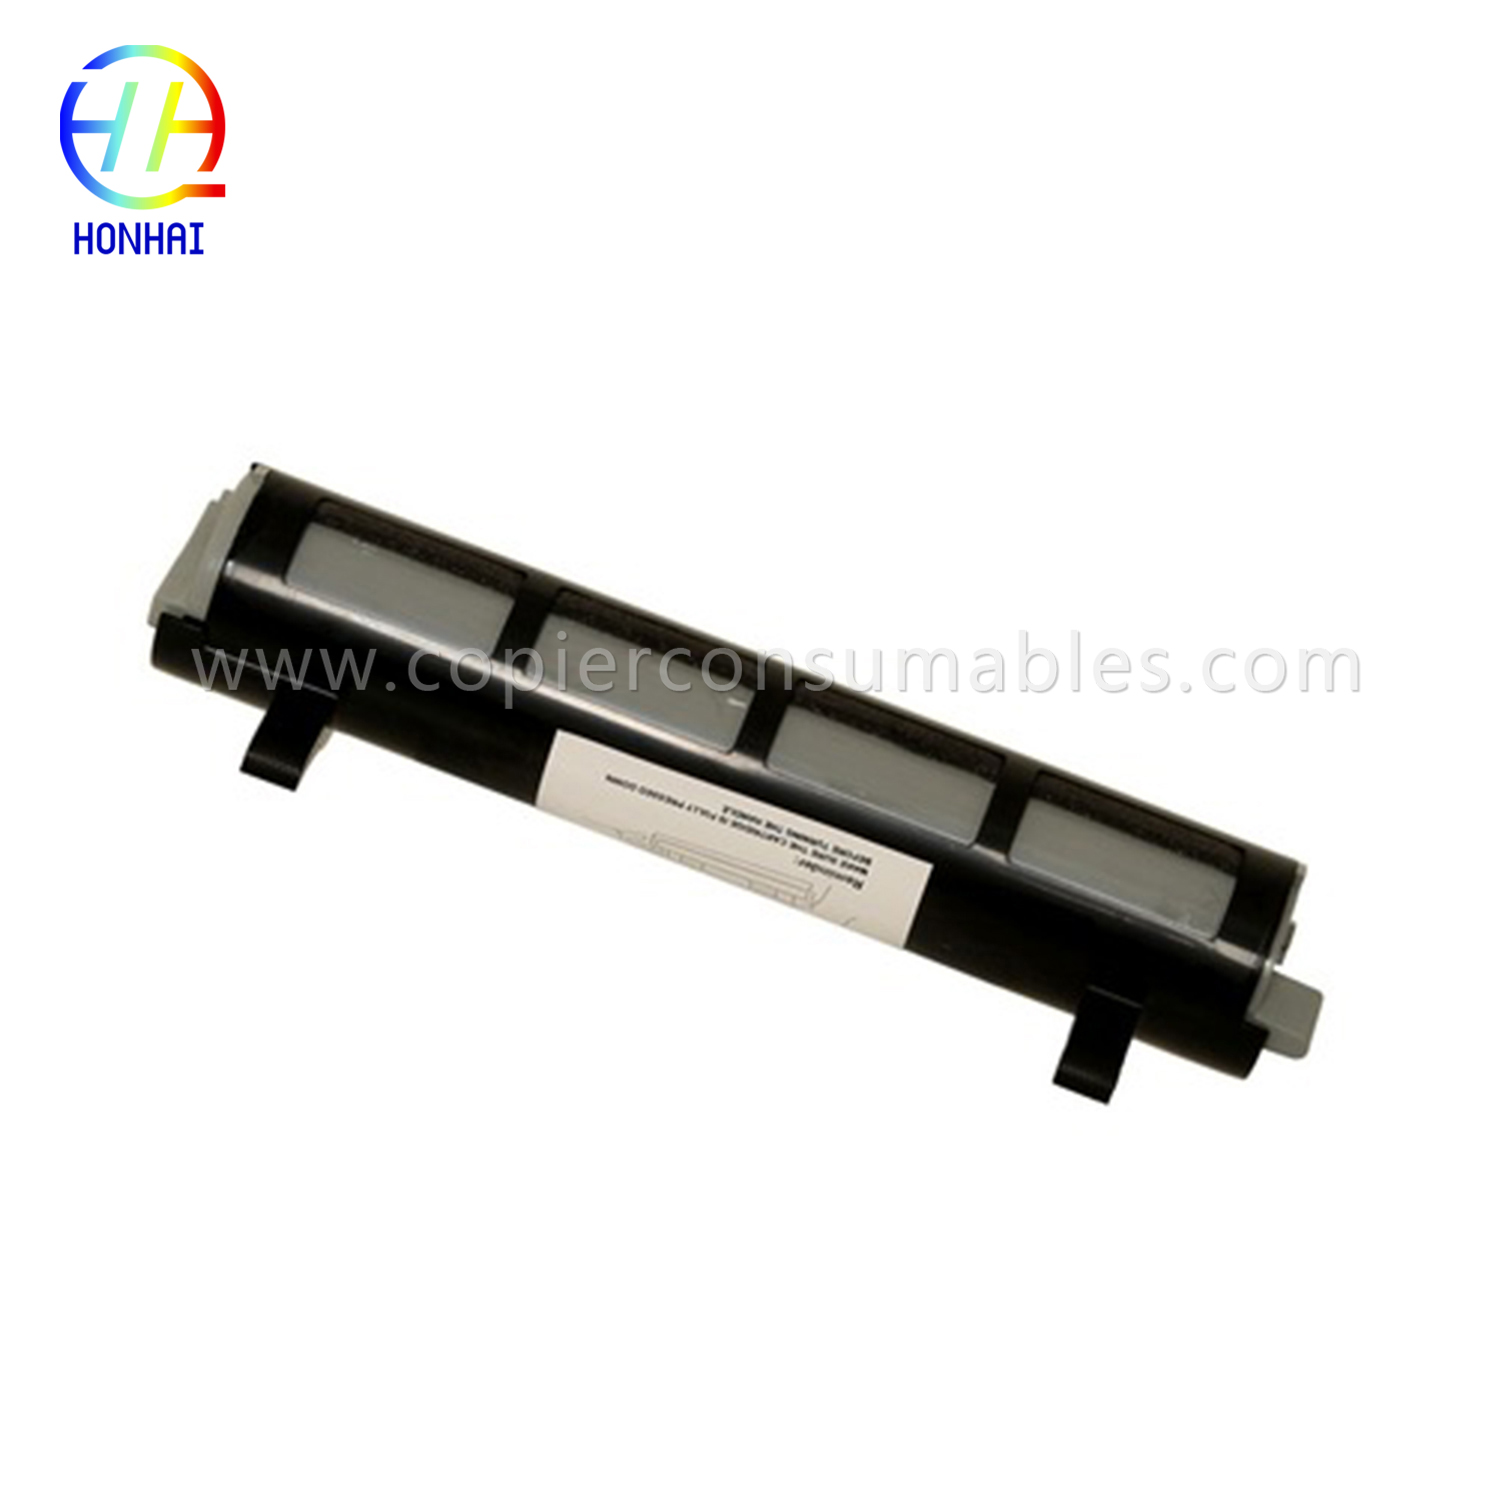 Black Toner Cartridge for Panasonic Kx-FL511 Kx-Fa83 Kx-FL541 Kx-FL611 Kx-Flm651 Kx-Flm661 Kx-Flm671